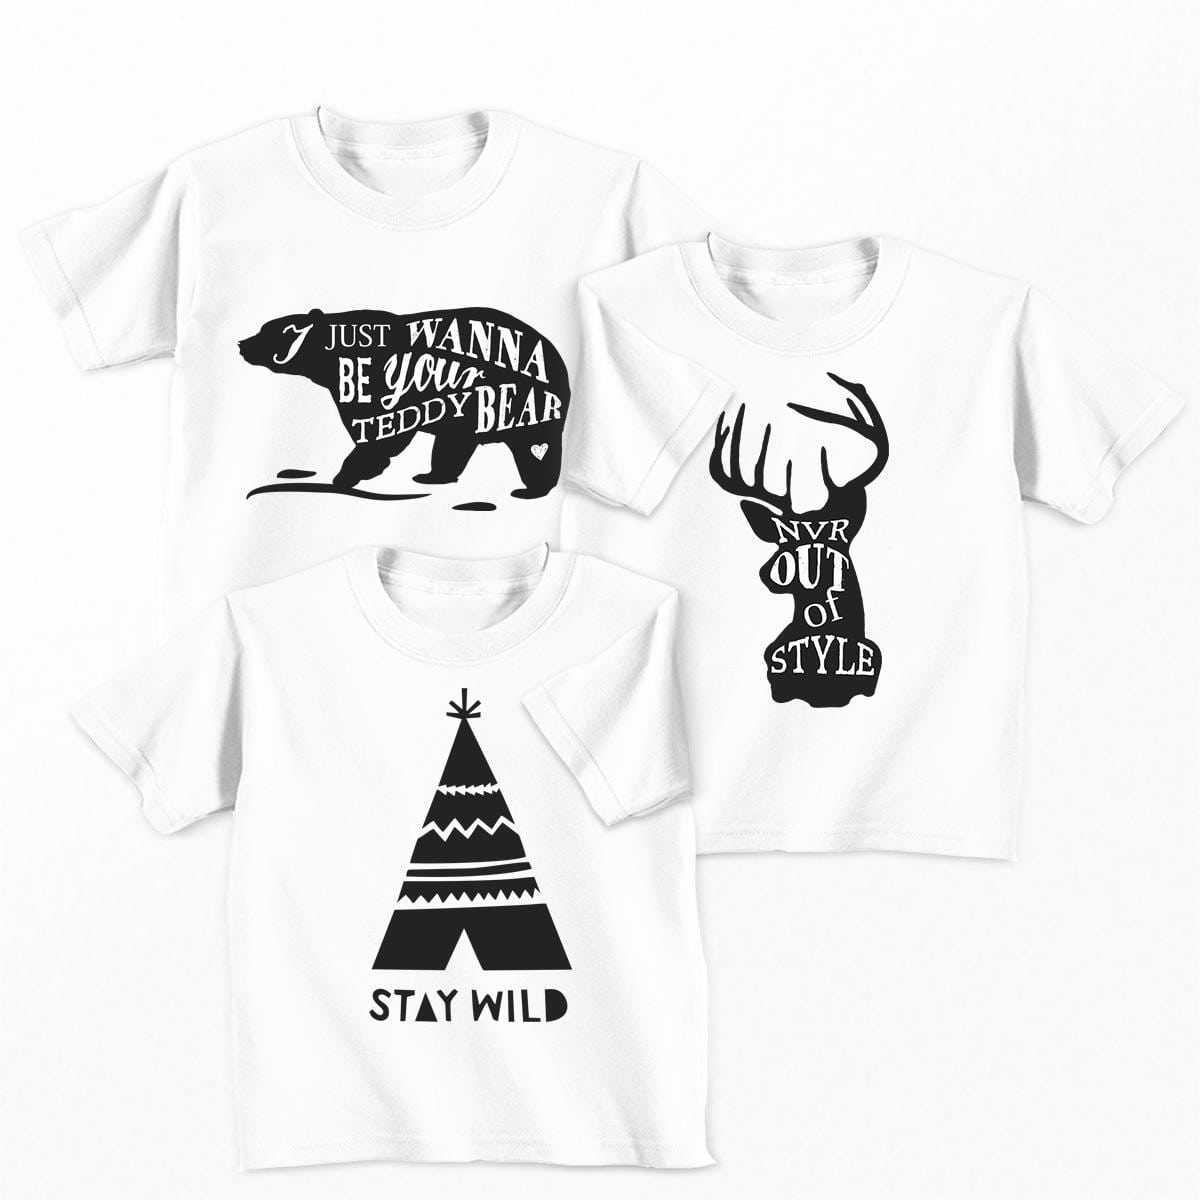 Tricouri copii - Set tricouri Stay Wild - baietel1